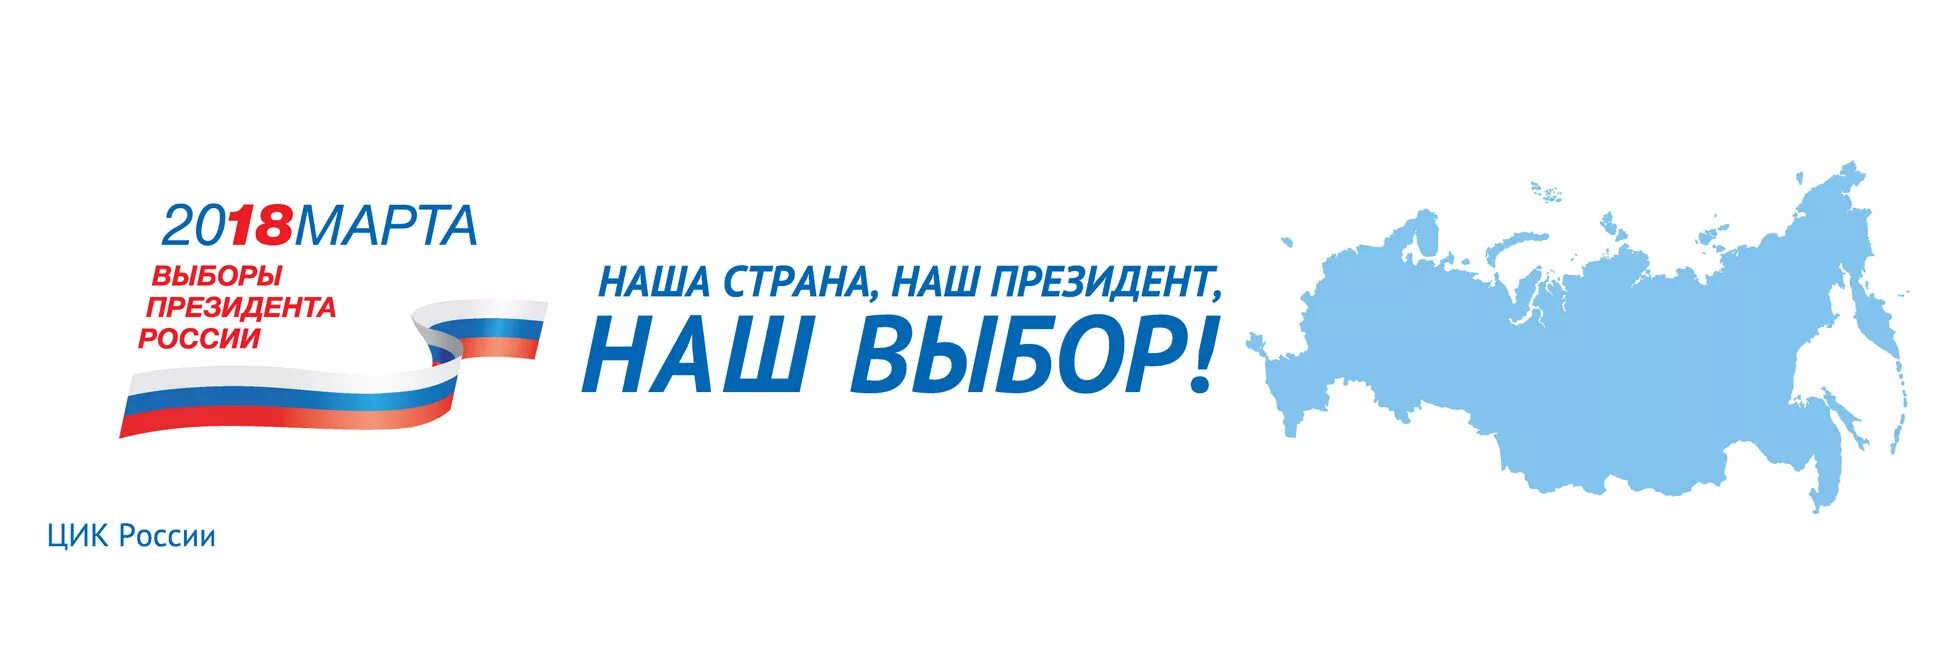 Выборы всегда связаны с. Выборы президента России. Выборы президента лого. Выборы 2018 логотип.